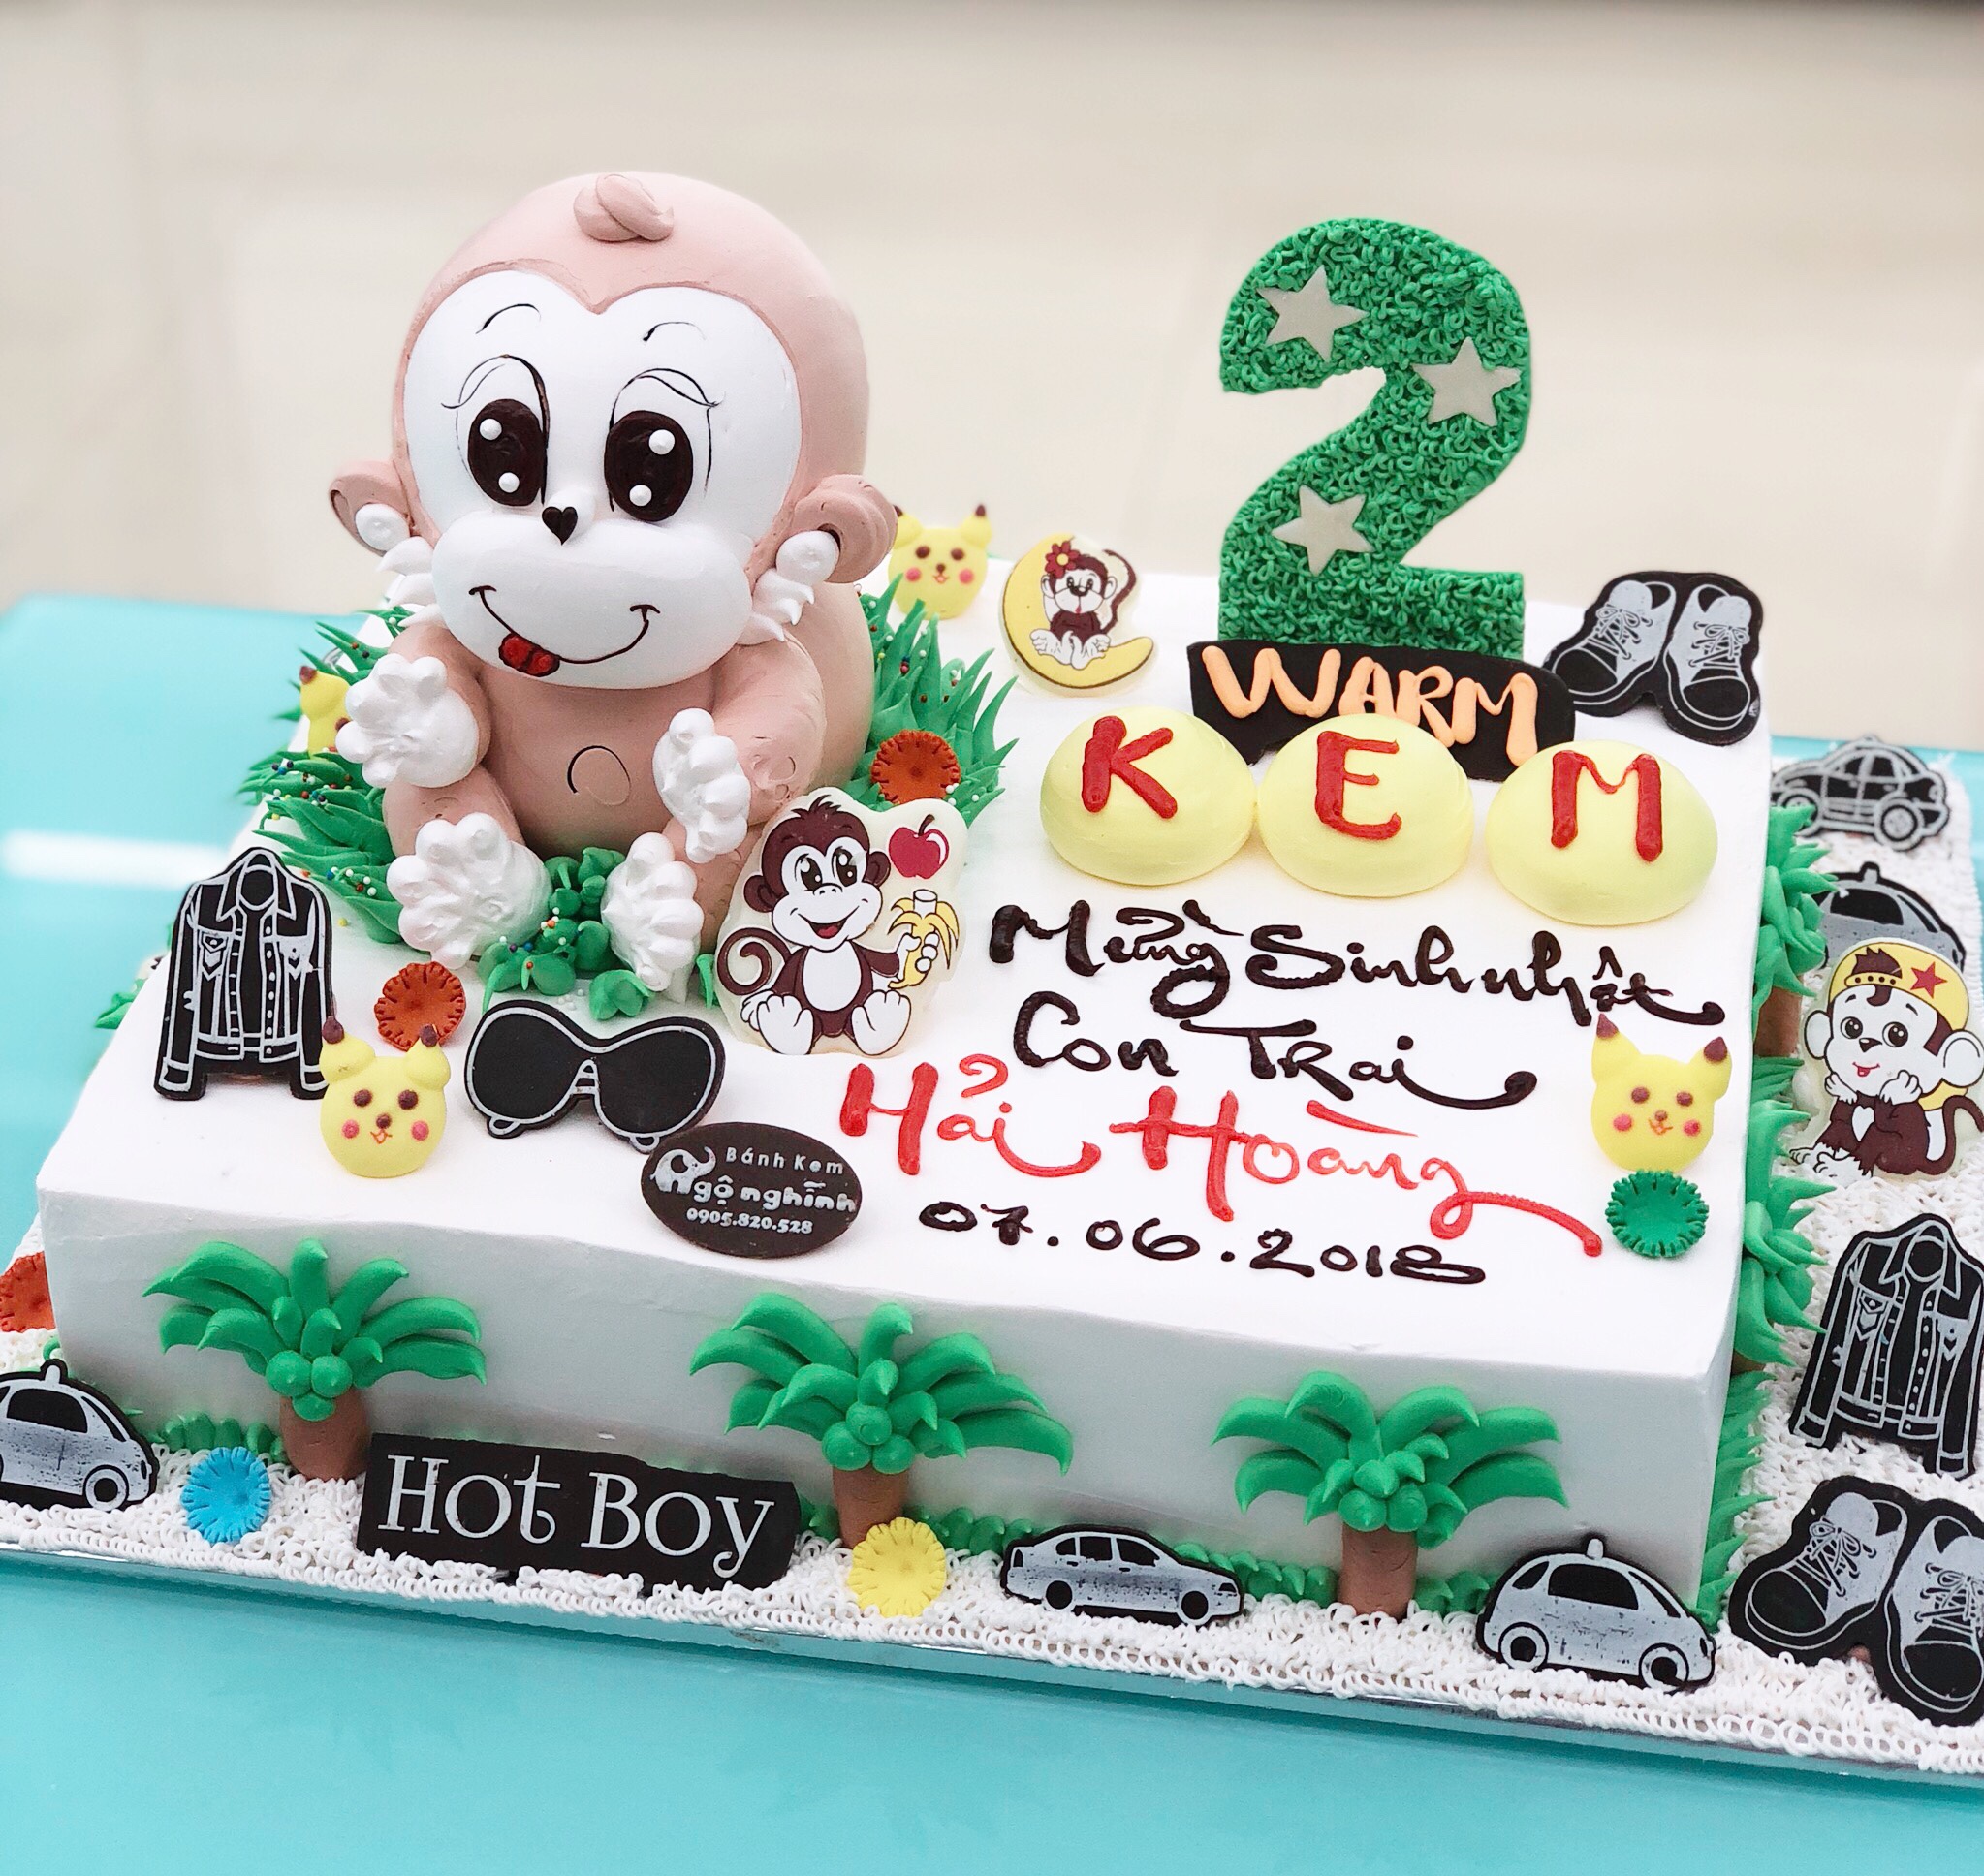 Bánh sinh nhật hình con khỉ là sự lựa chọn hoàn hảo cho các bữa tiệc sinh nhật, đặc biệt là với hình dáng đáng yêu của con khỉ. Hãy đến và xem hình ảnh về chiếc bánh sinh nhật này để cảm nhận sự ngọt ngào trong mỗi lát cắt.